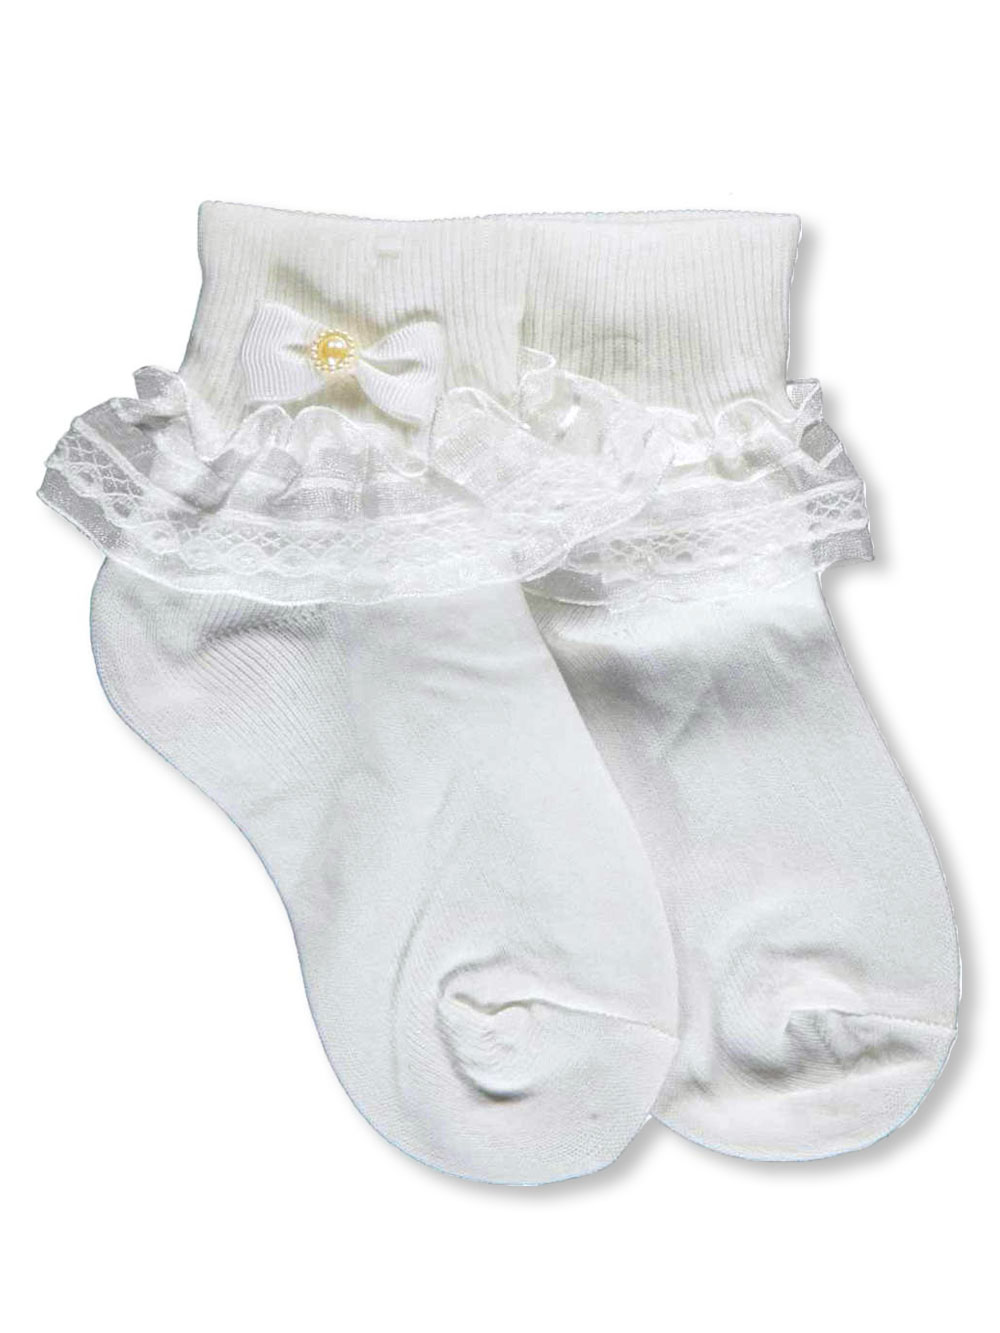 baby girl white socks